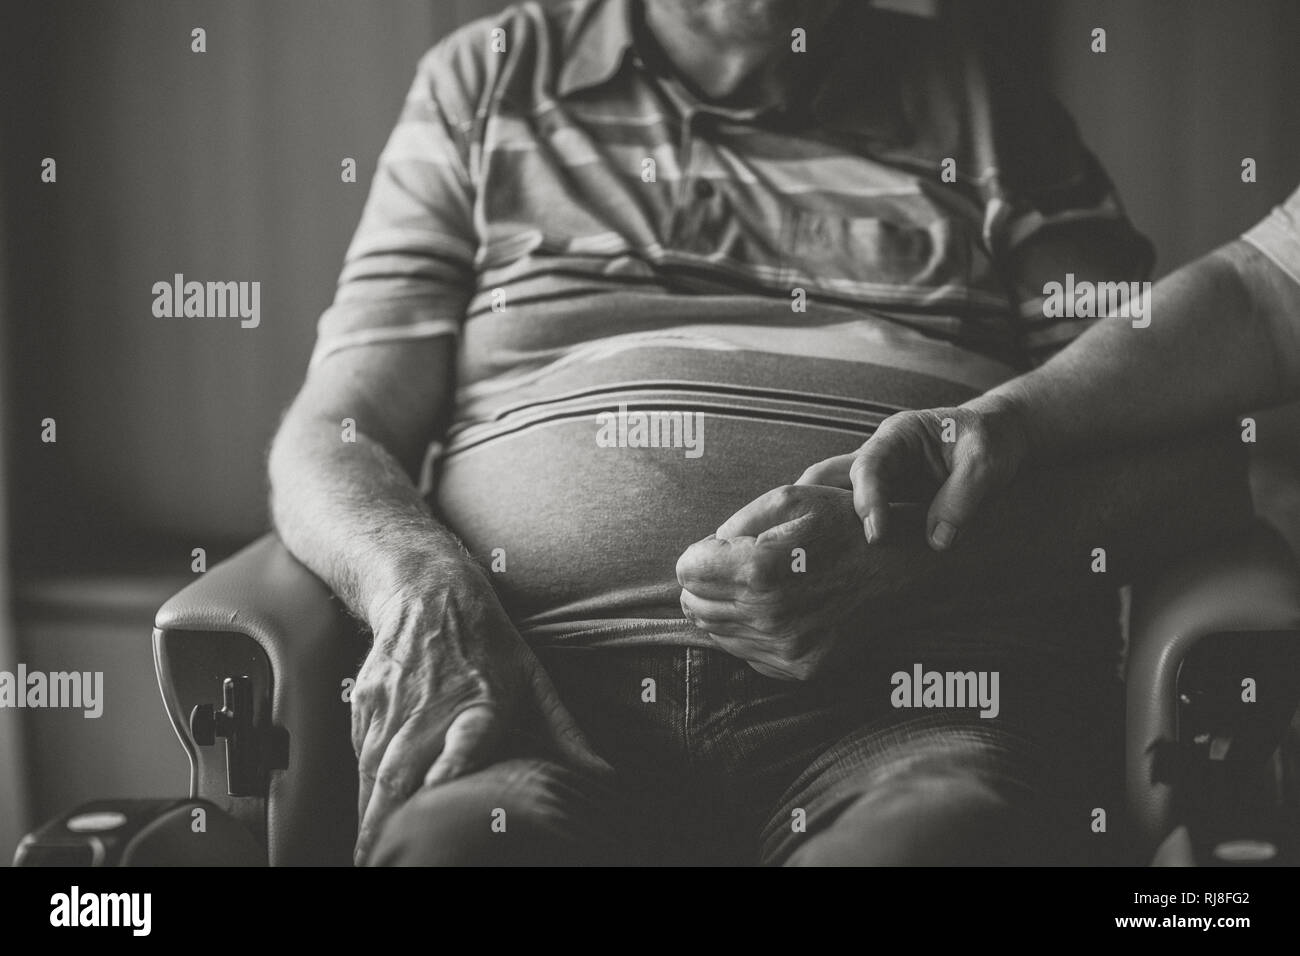 Seniorenpaar Zuhause, Mann im Rollstuhl, Händchen haltend, Nahaufnahme, Detail, s/w Stock Photo